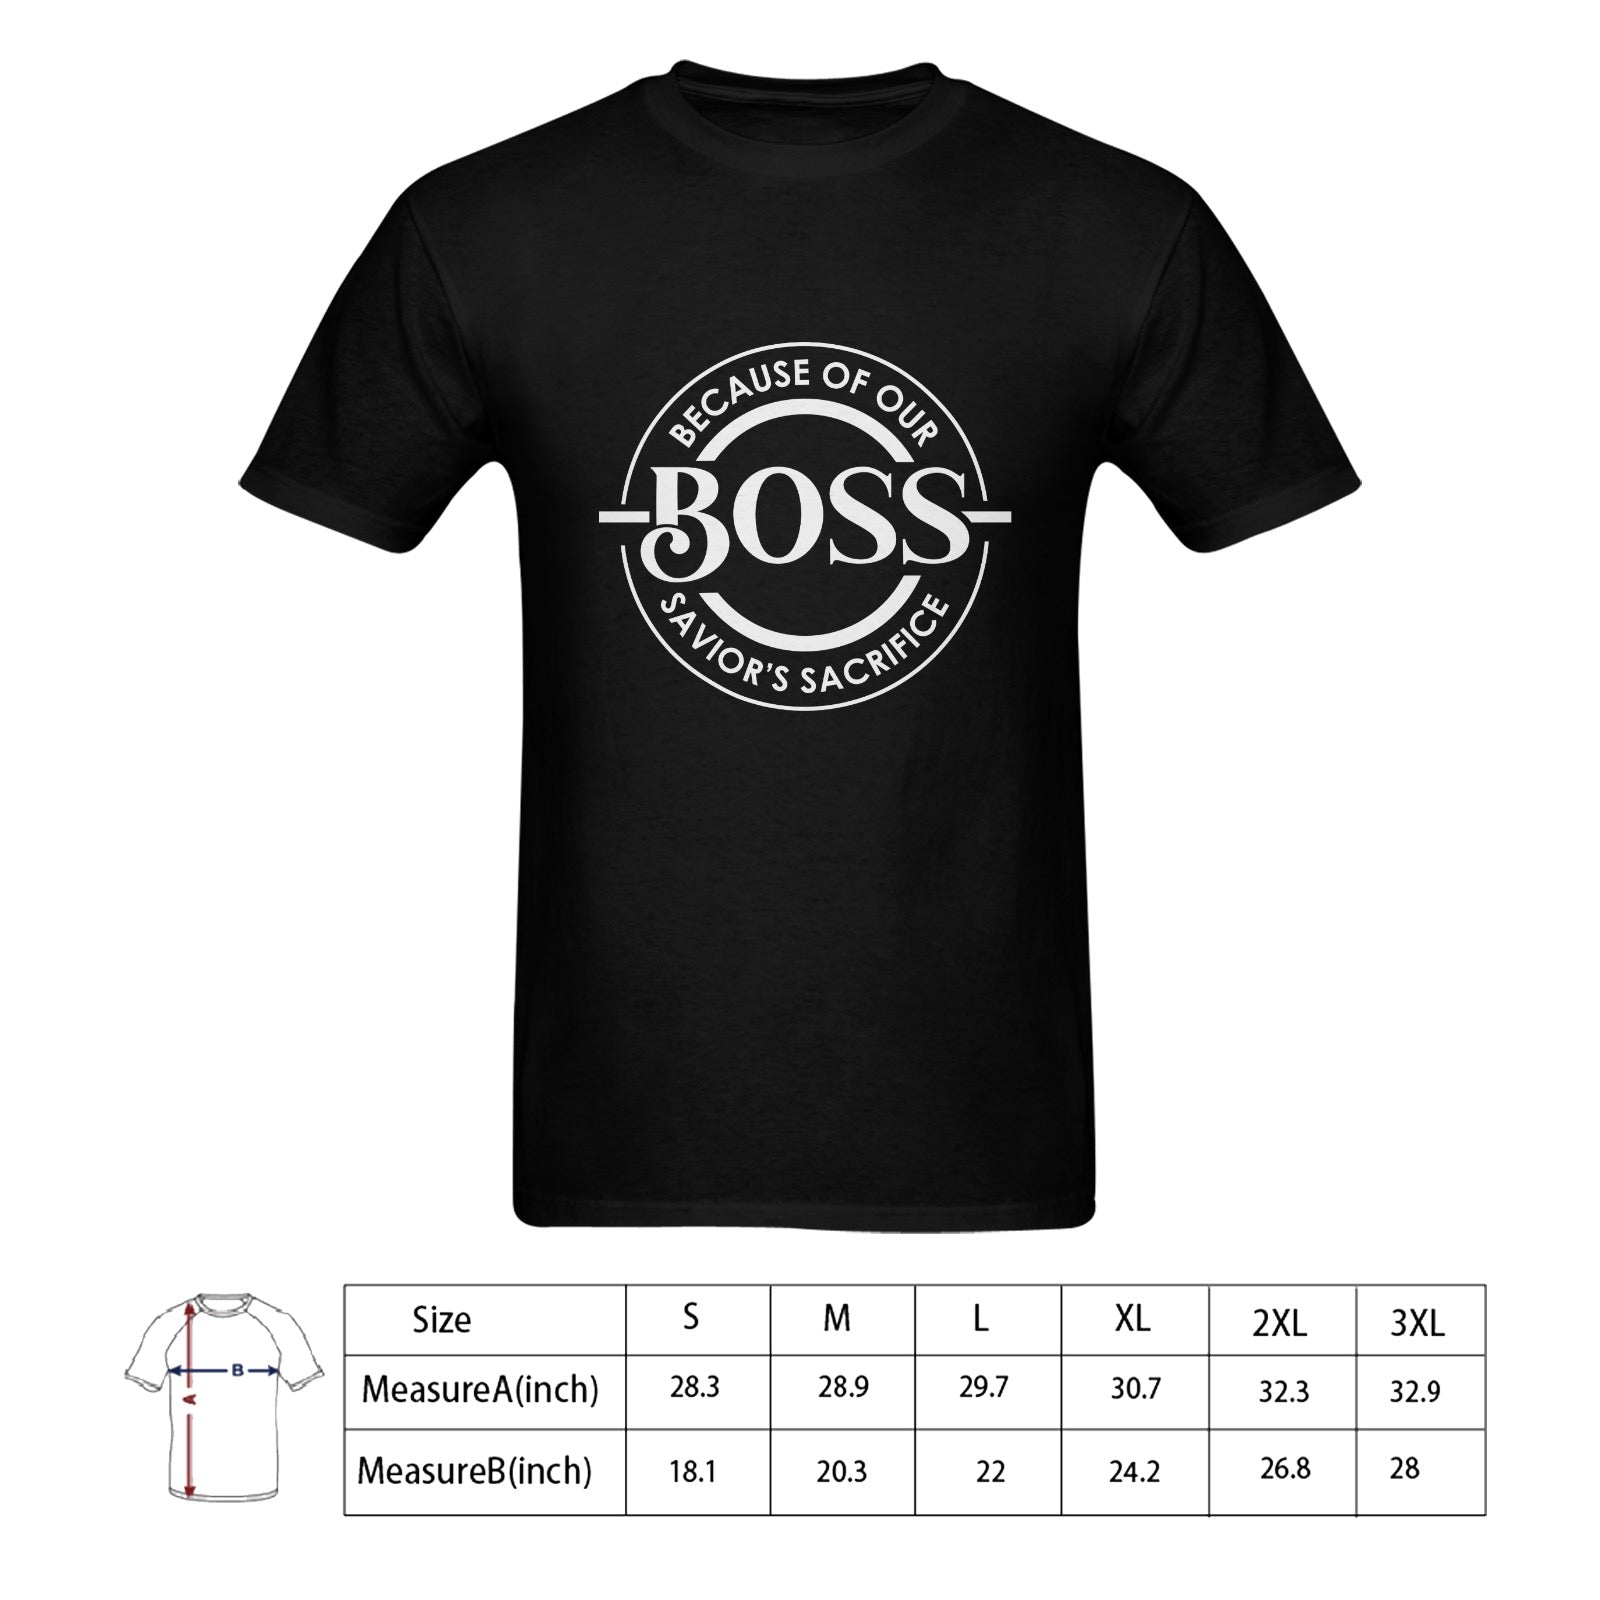 Men's BOSS T-shirt